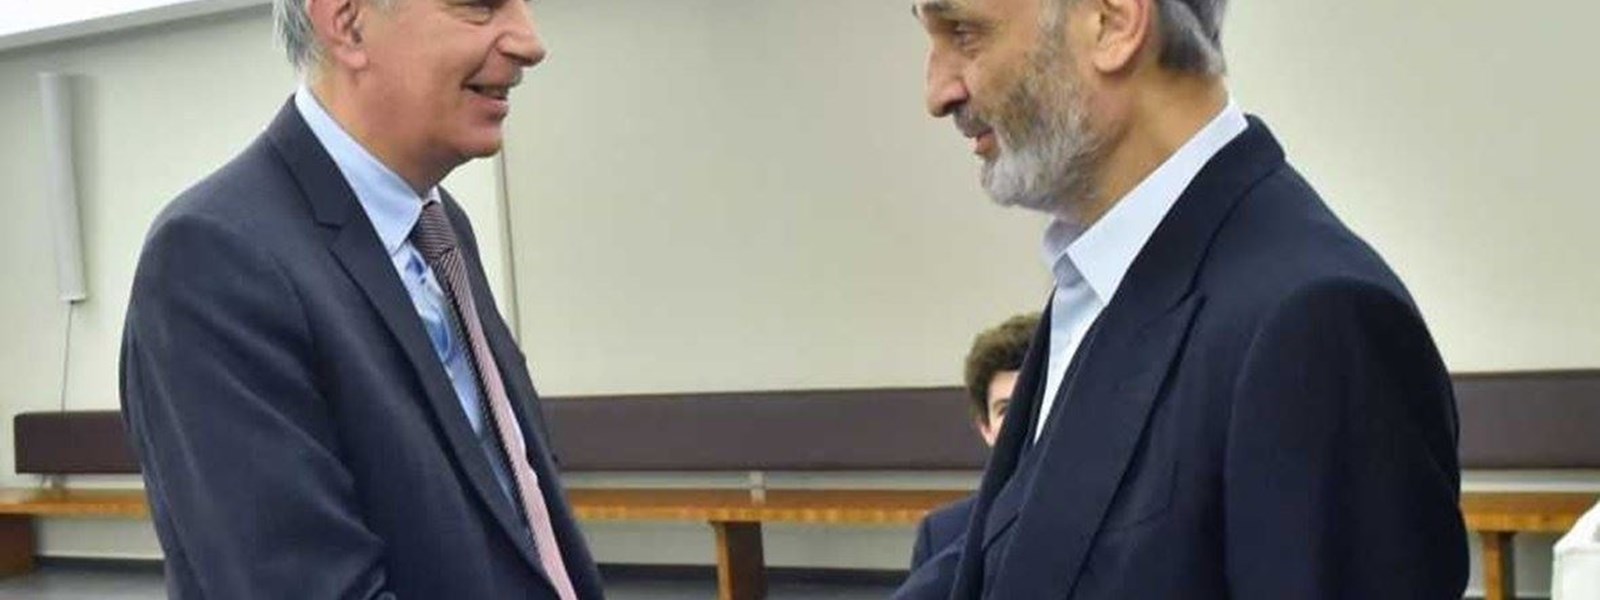 رئيس حزب "القوات اللبنانية" سمير جعجع والسفير الفرنسي هيرفيه ماغرو 